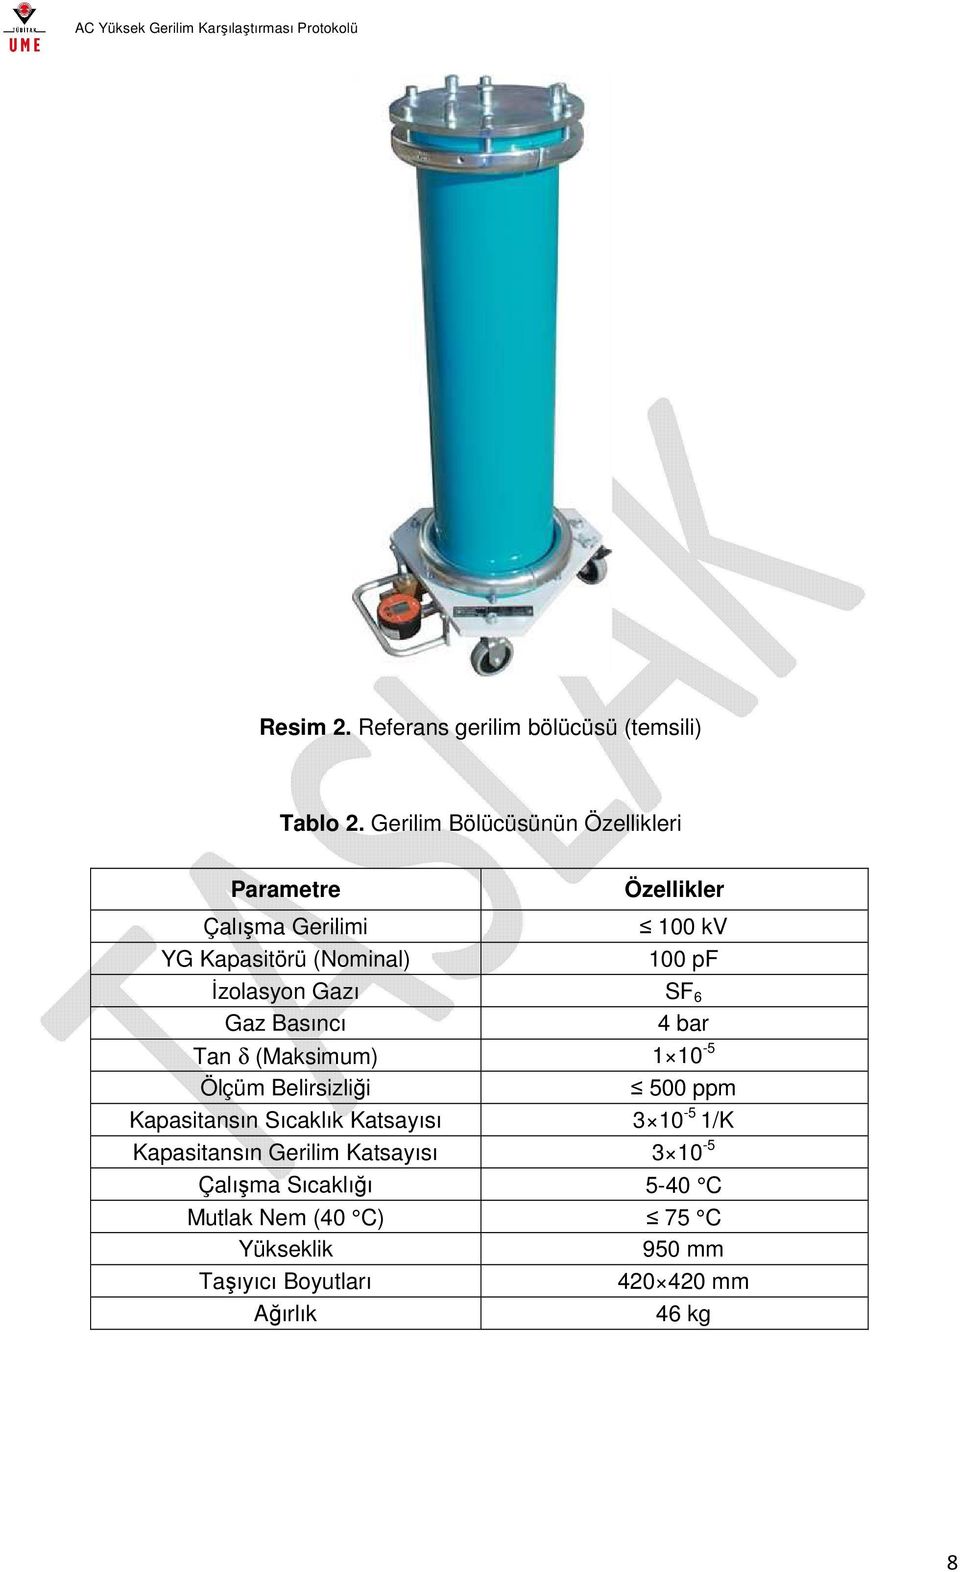 İzolasyon Gazı SF 6 Gaz Basıncı 4 bar Tan δ (Maksimum) 1 10-5 Ölçüm Belirsizliği 500 ppm Kapasitansın Sıcaklık